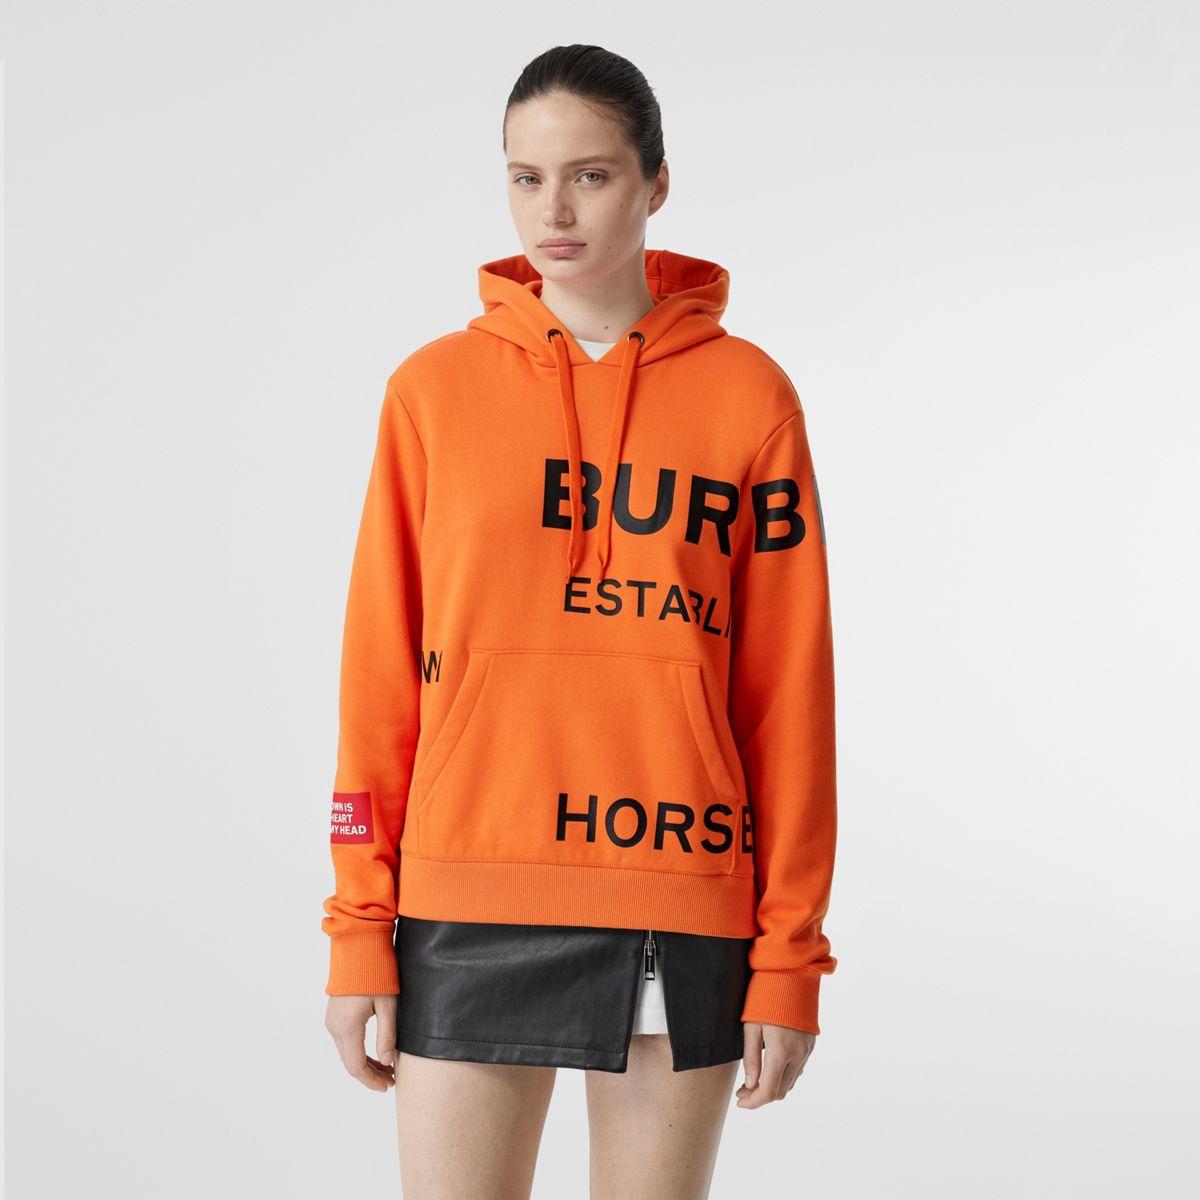 burberry hoodie orange